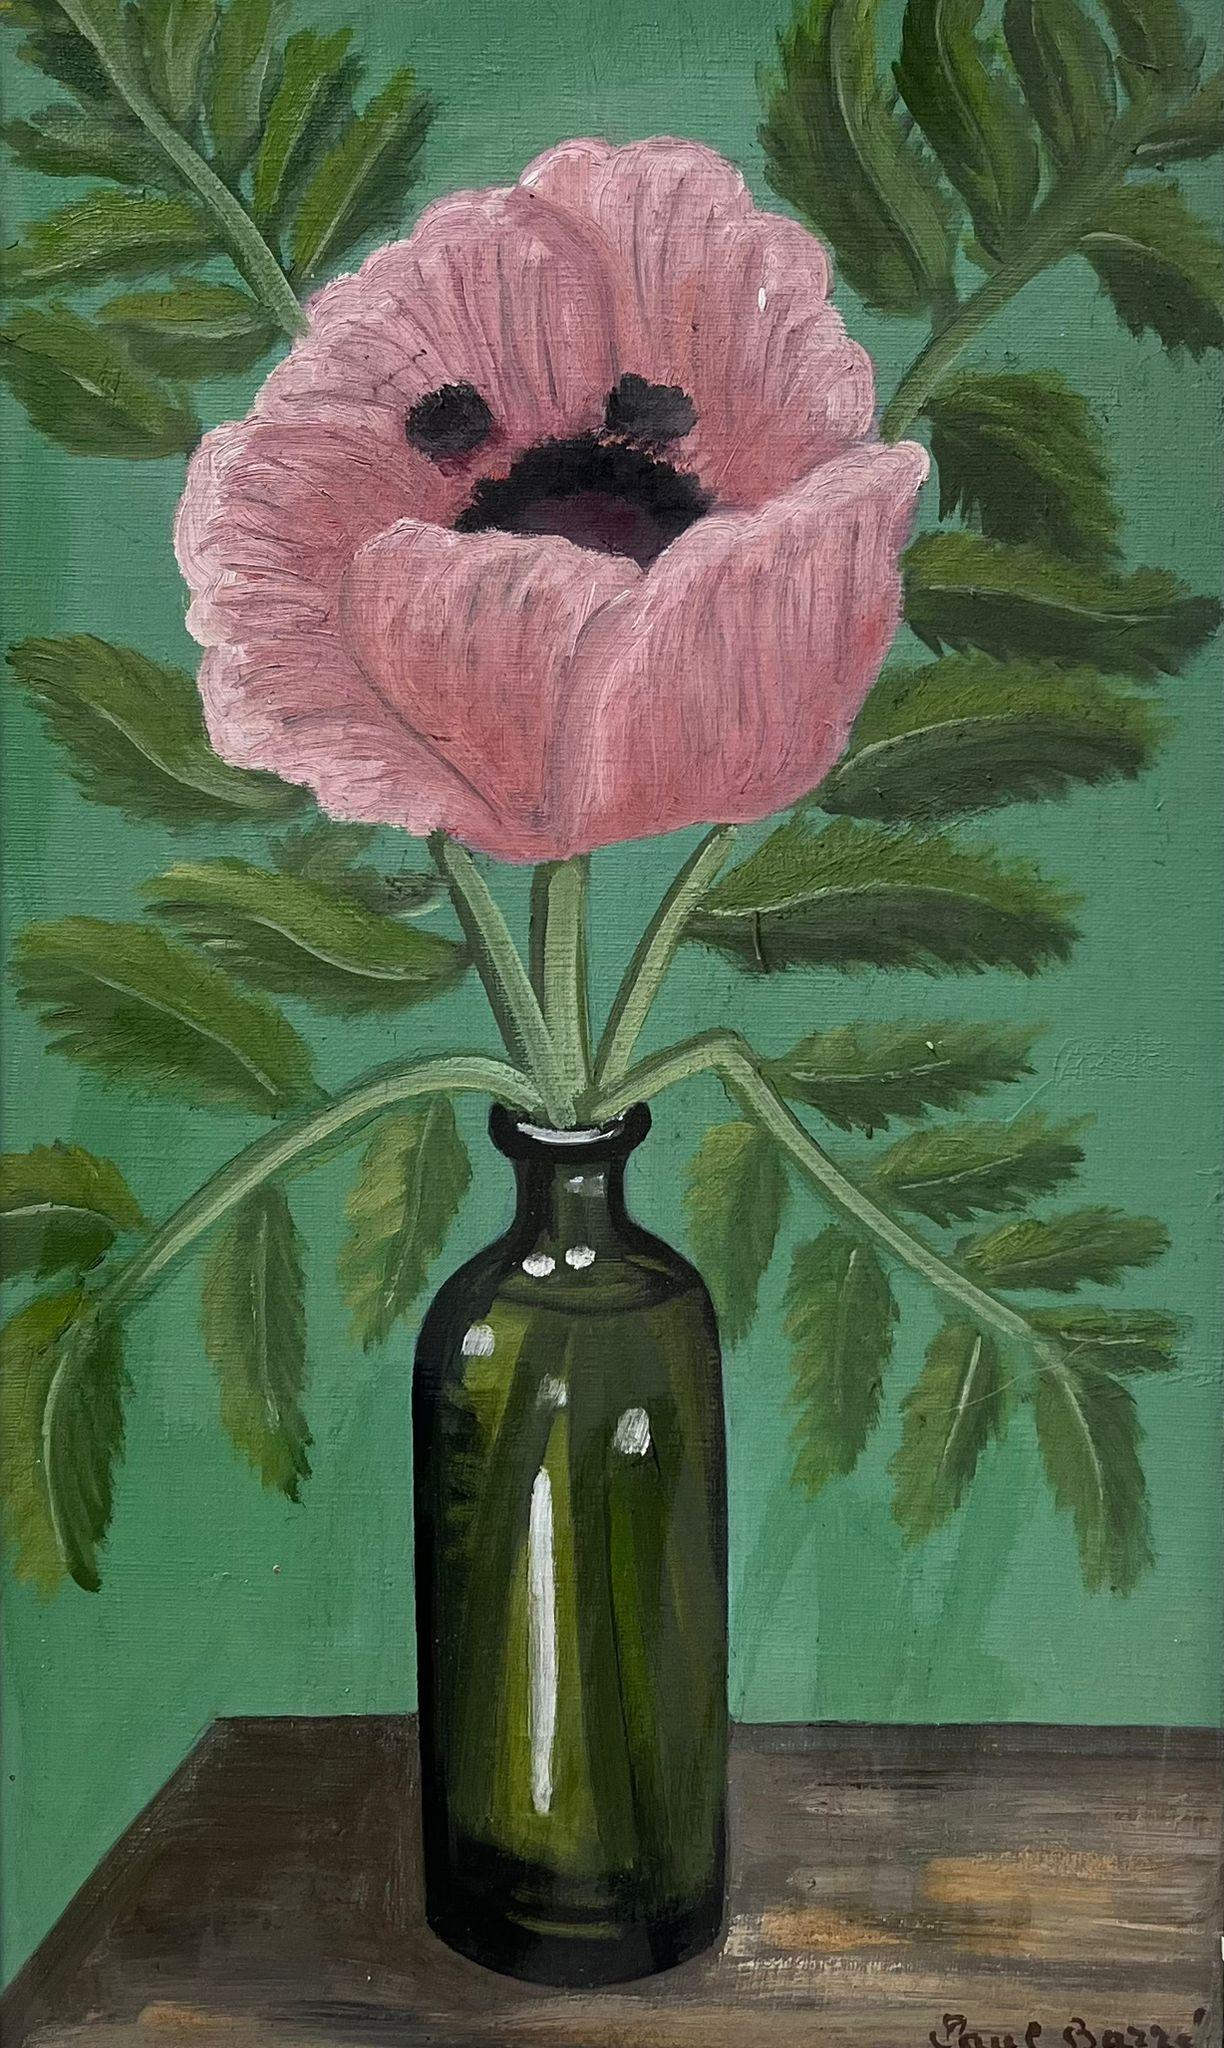 Vieille huile impressionniste française, pivoine rose dans un verre vert bouteille originale - Painting de French School